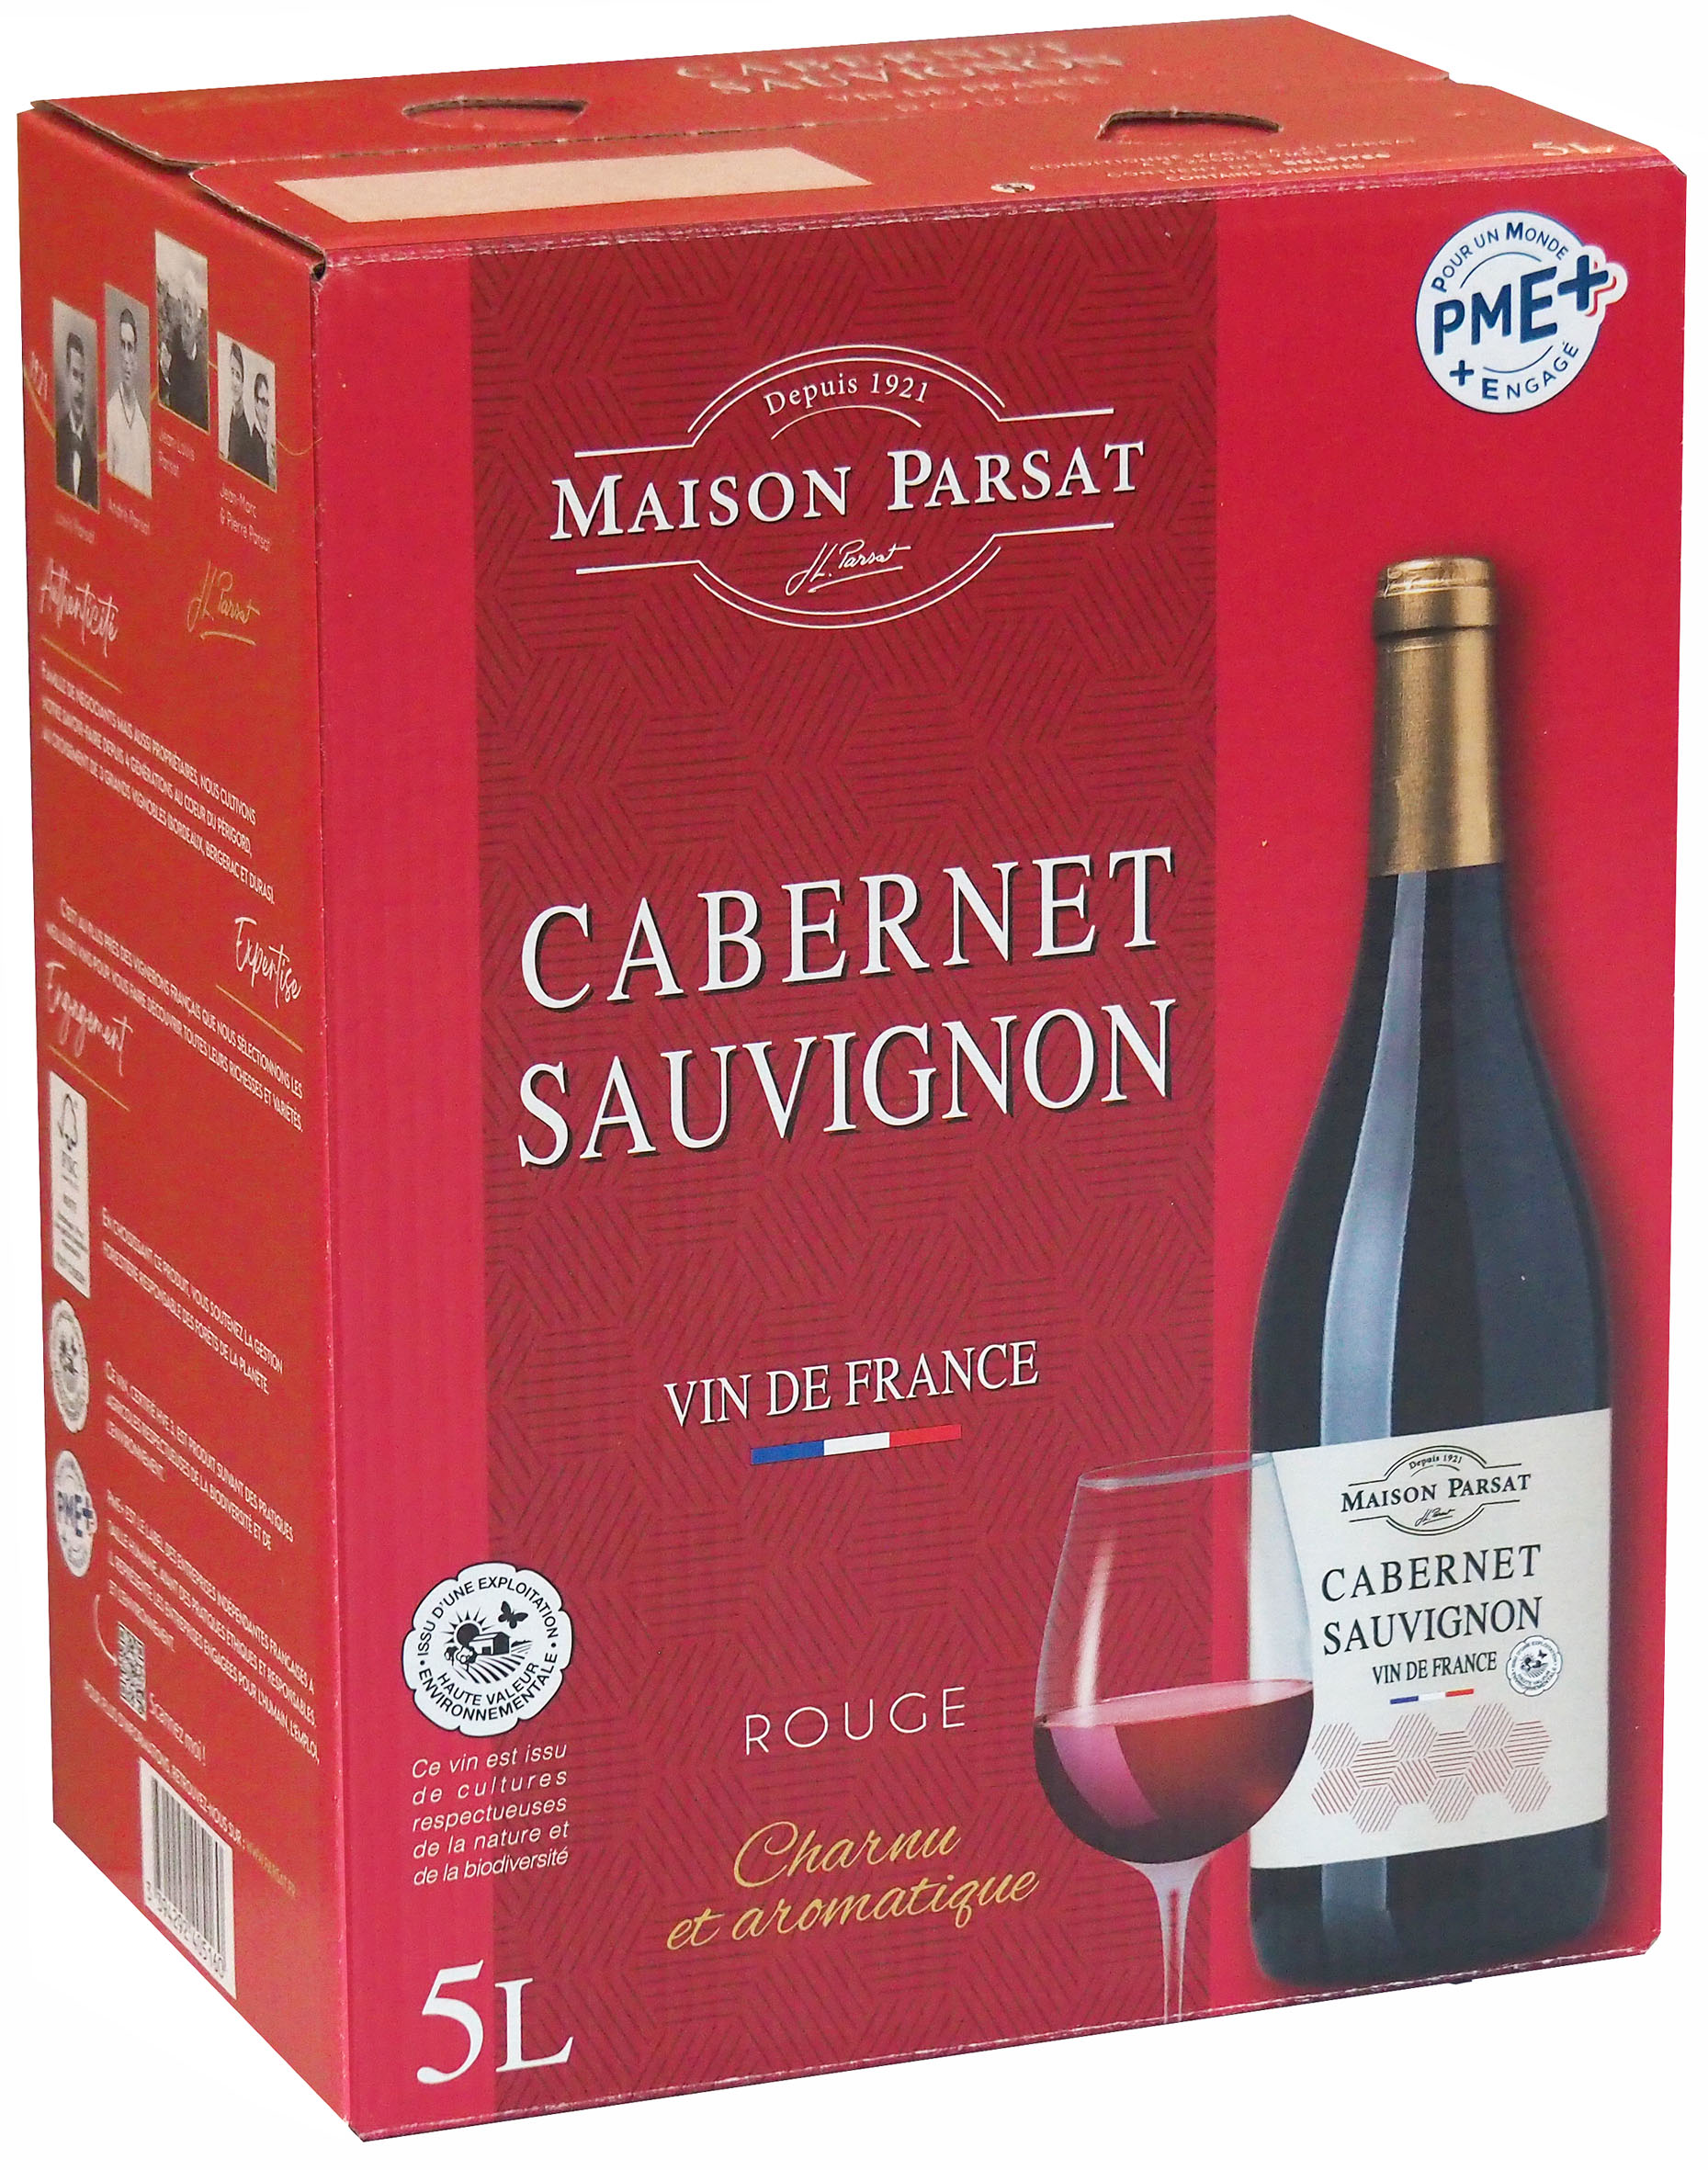 Miniature JL Parsat - Vin de France Rouge Cabernet Sauvignon HVE 3